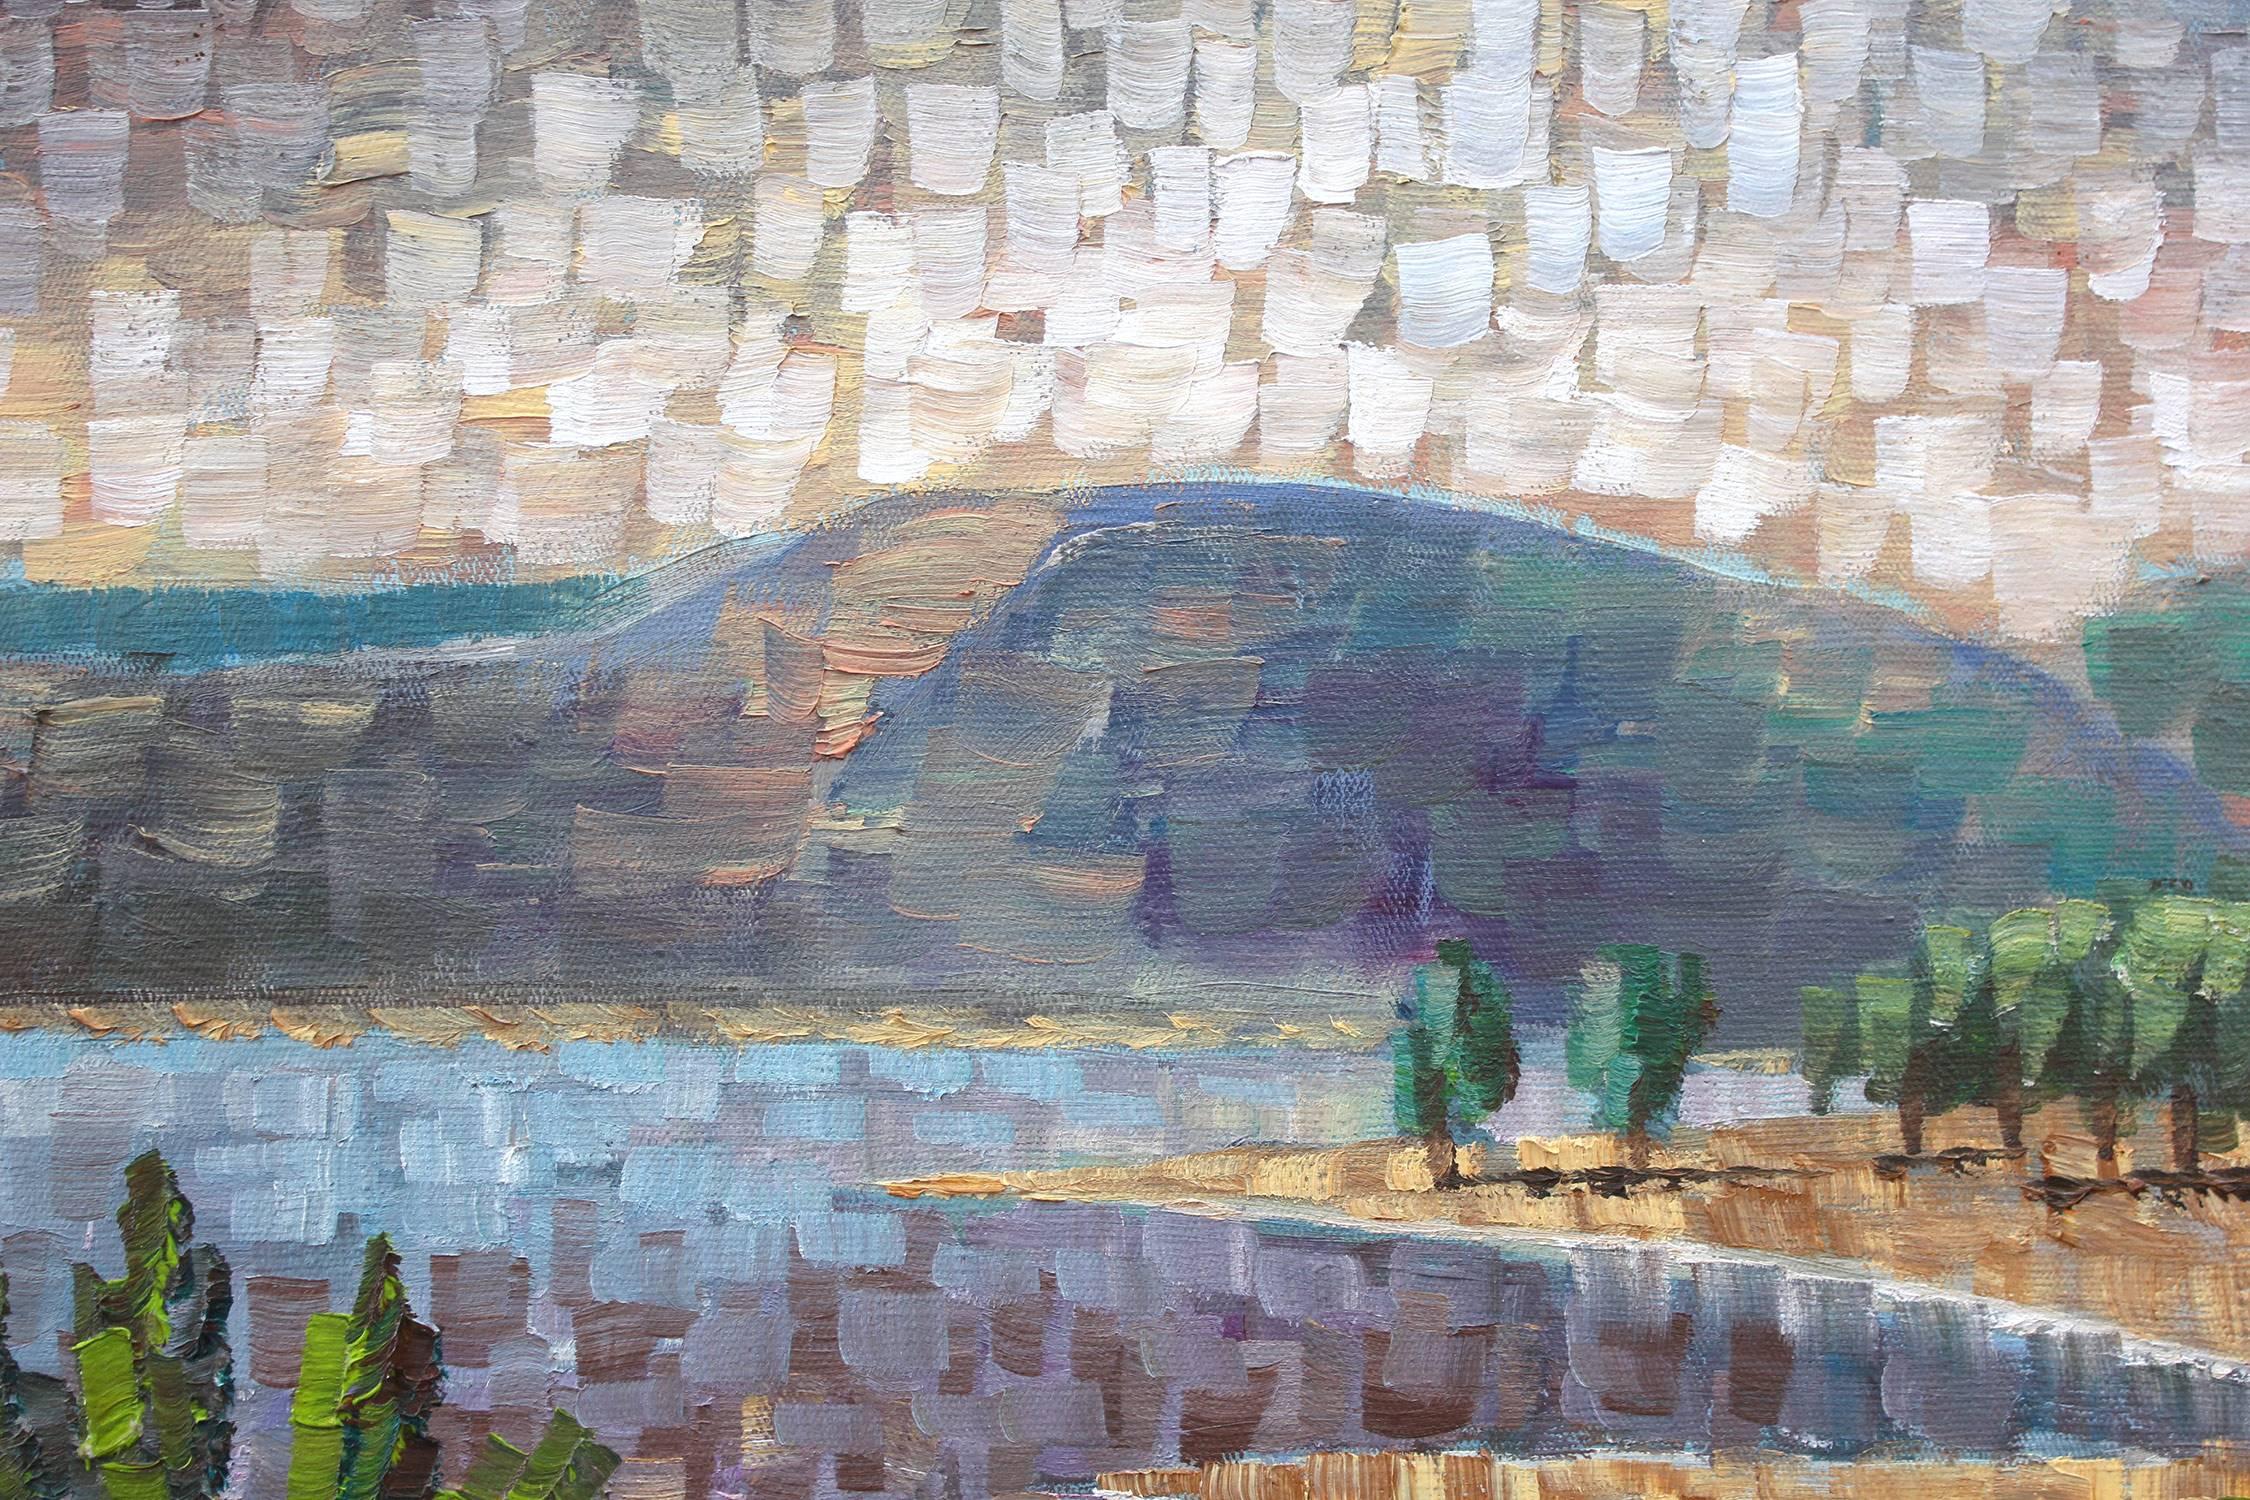 Eine atemberaubende Darstellung eines Weges, der hinunter zum See führt, mit Bergen im Hintergrund. Nemethy verwendet eine kühne impressionistische Technik mit dickem Farbauftrag und wunderbaren Impressionen. Mit fröhlichen Farben ist dieses Stück